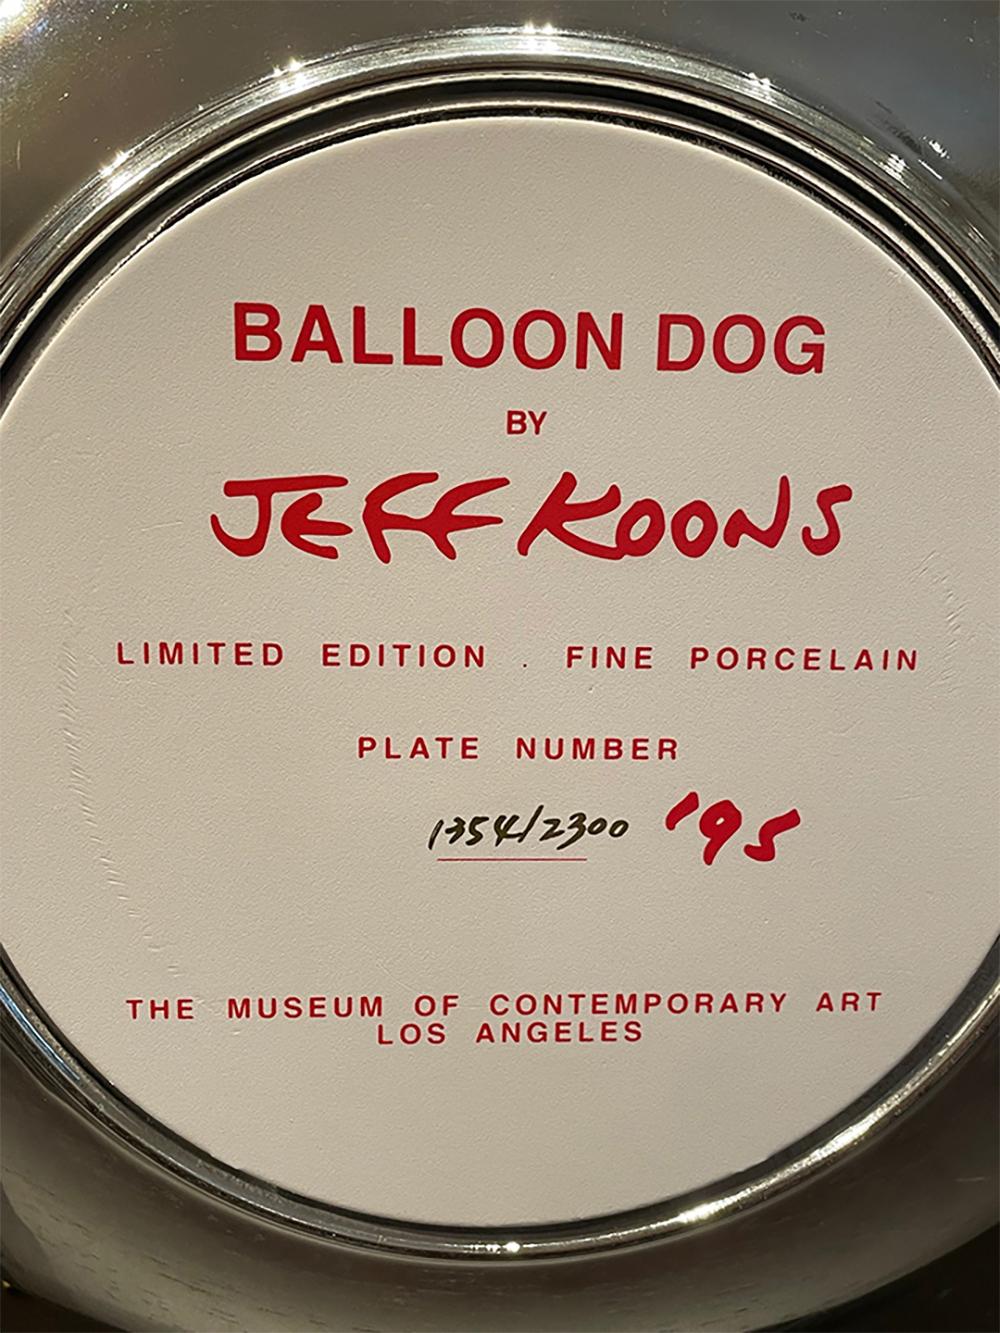 jeff koons balloon dogs